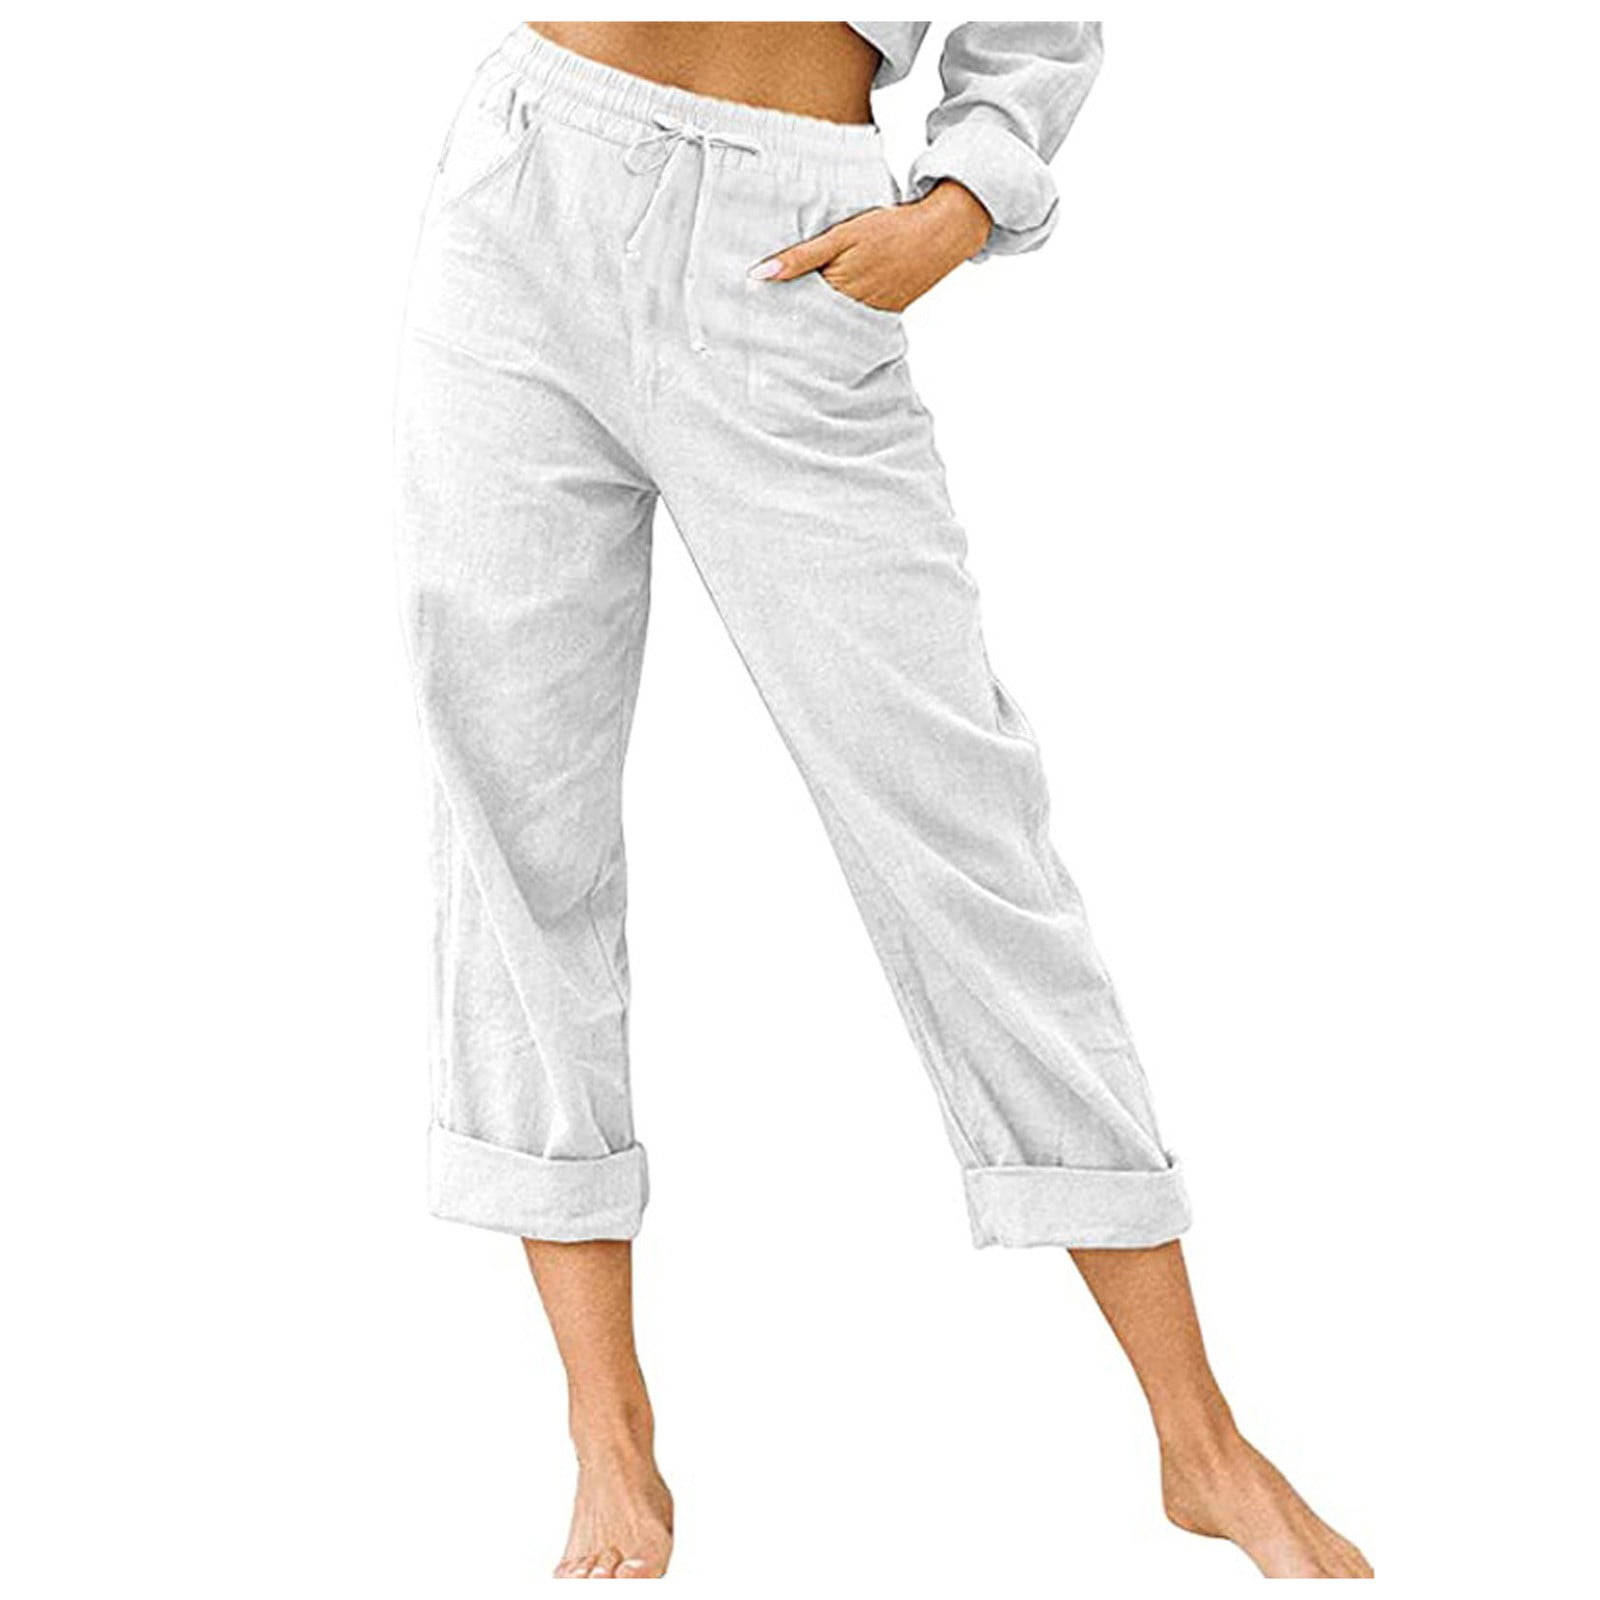 Women's Pants Women's Solid Color High Waist Pants Cotton And Linen ...